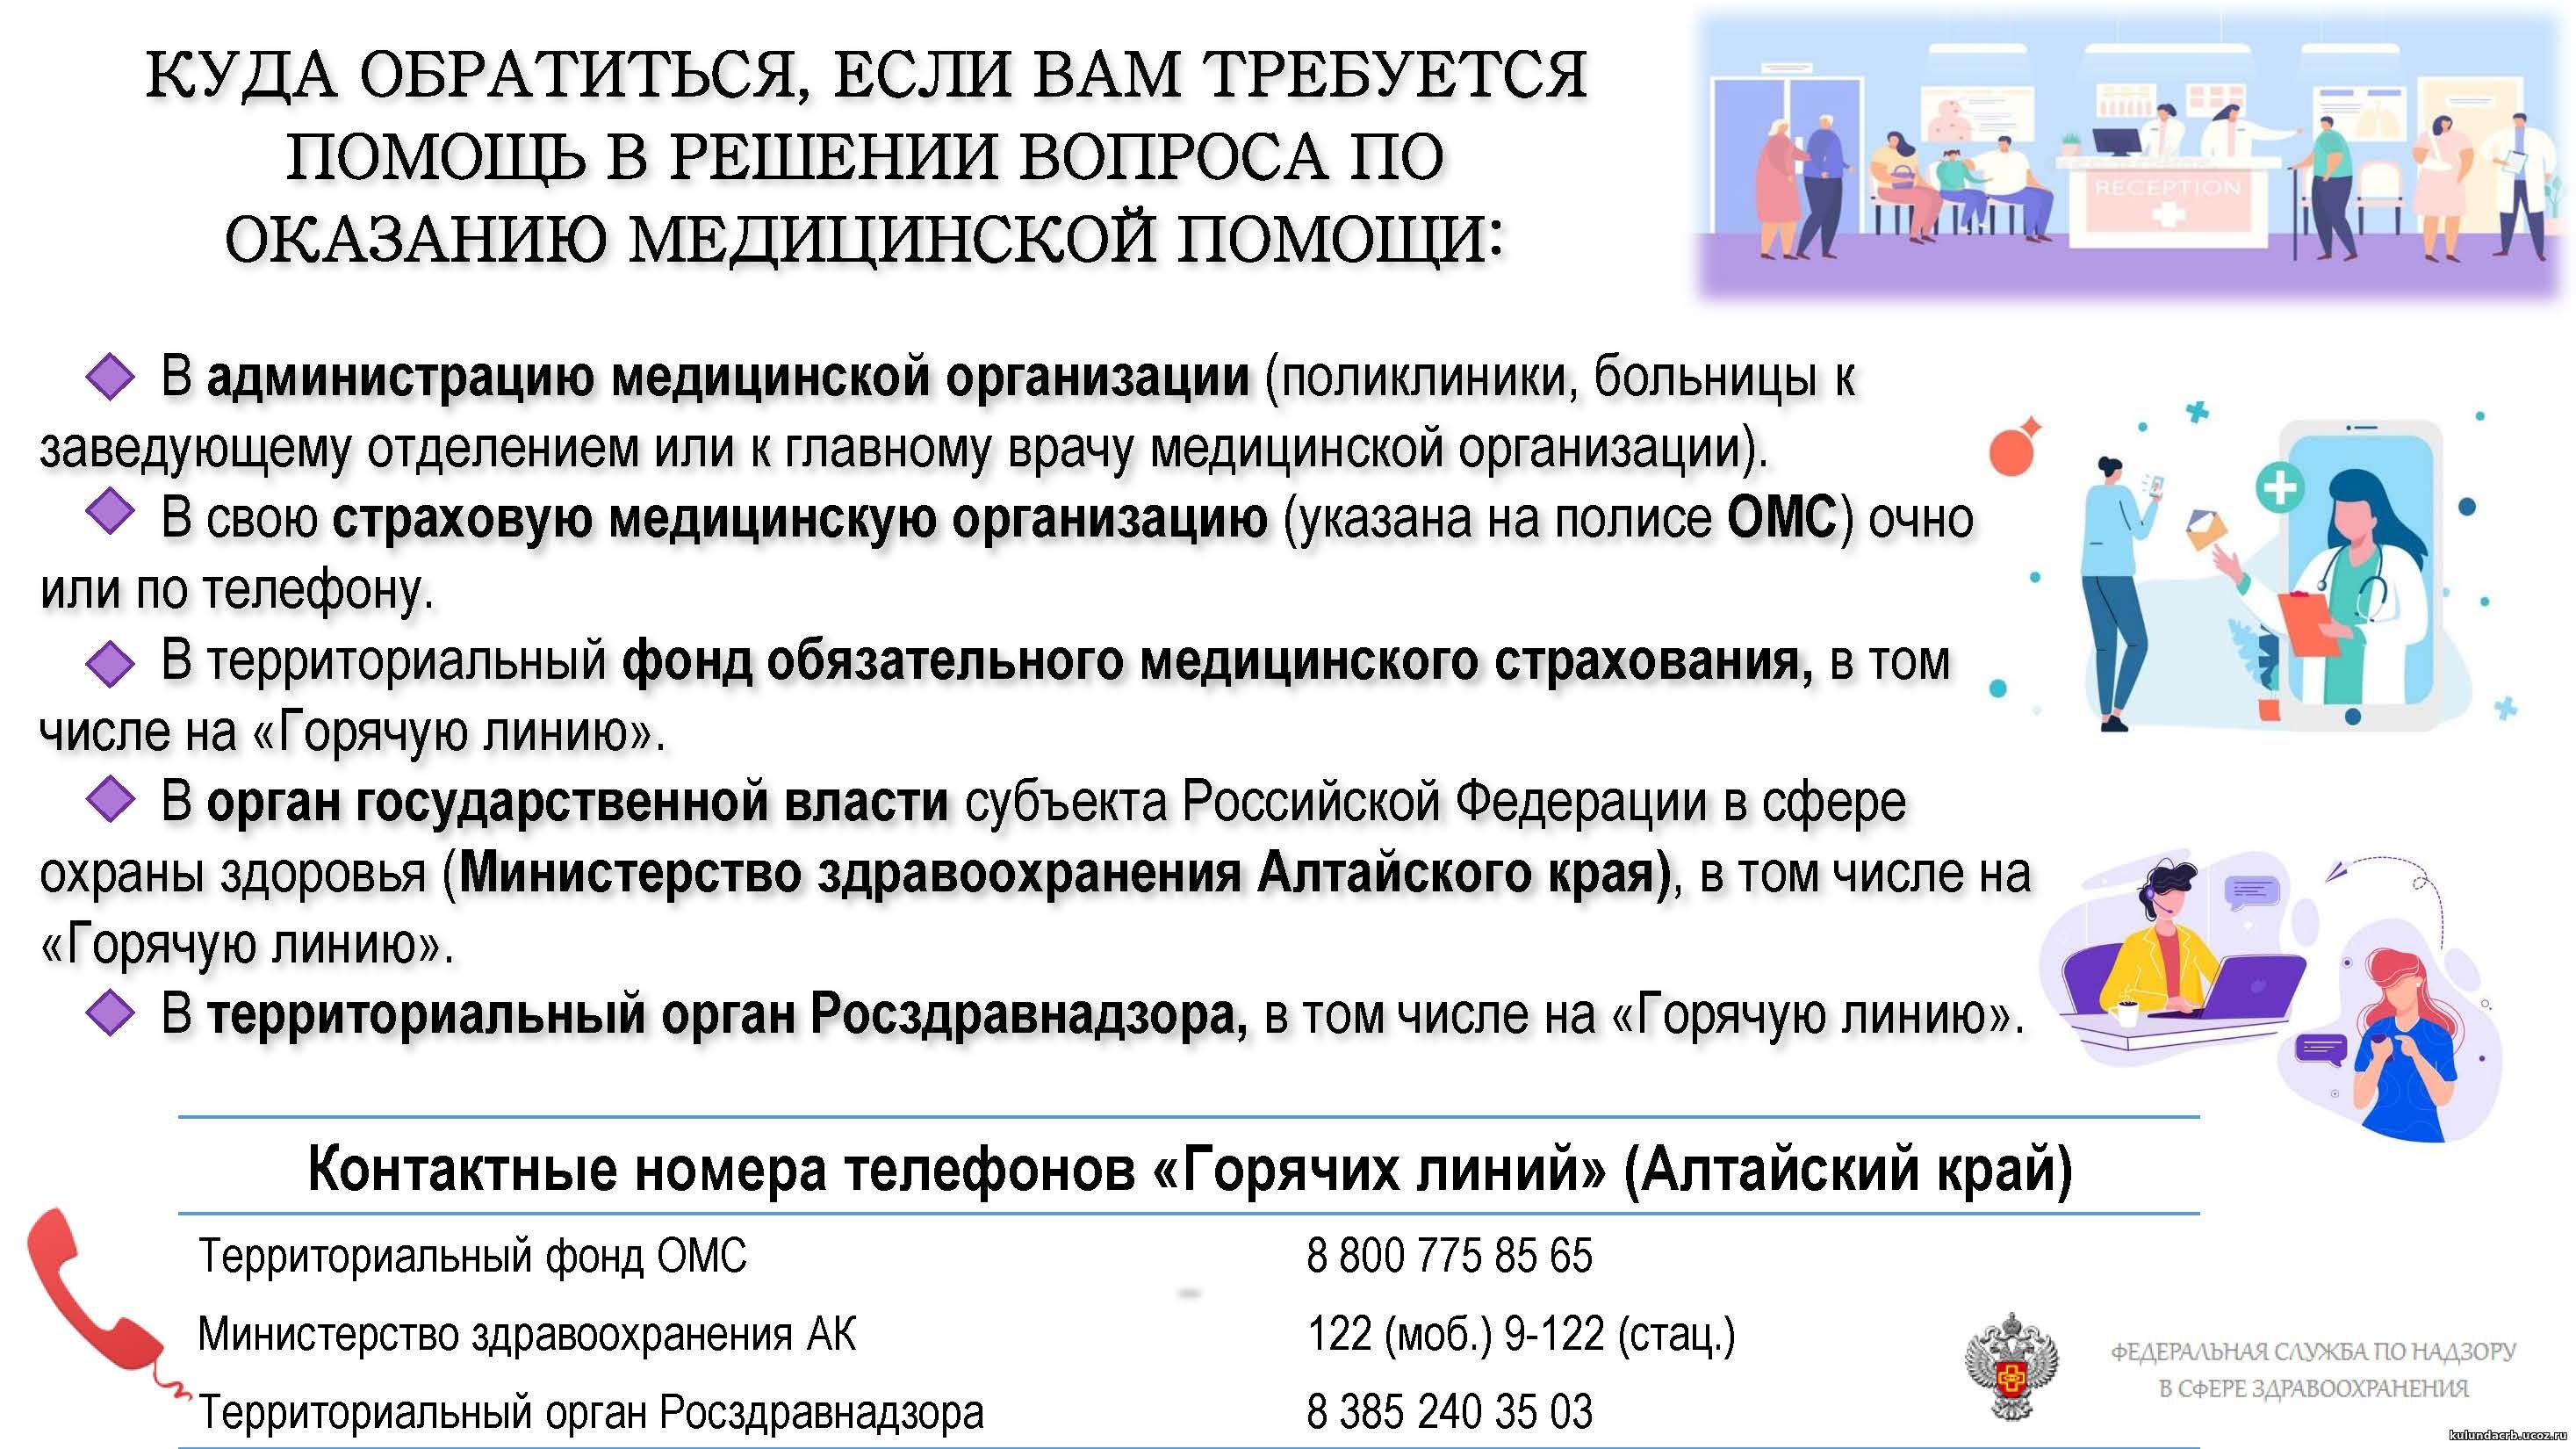 Лекарственное обеспечение жителей Алтайского края обсудили в АКЗС